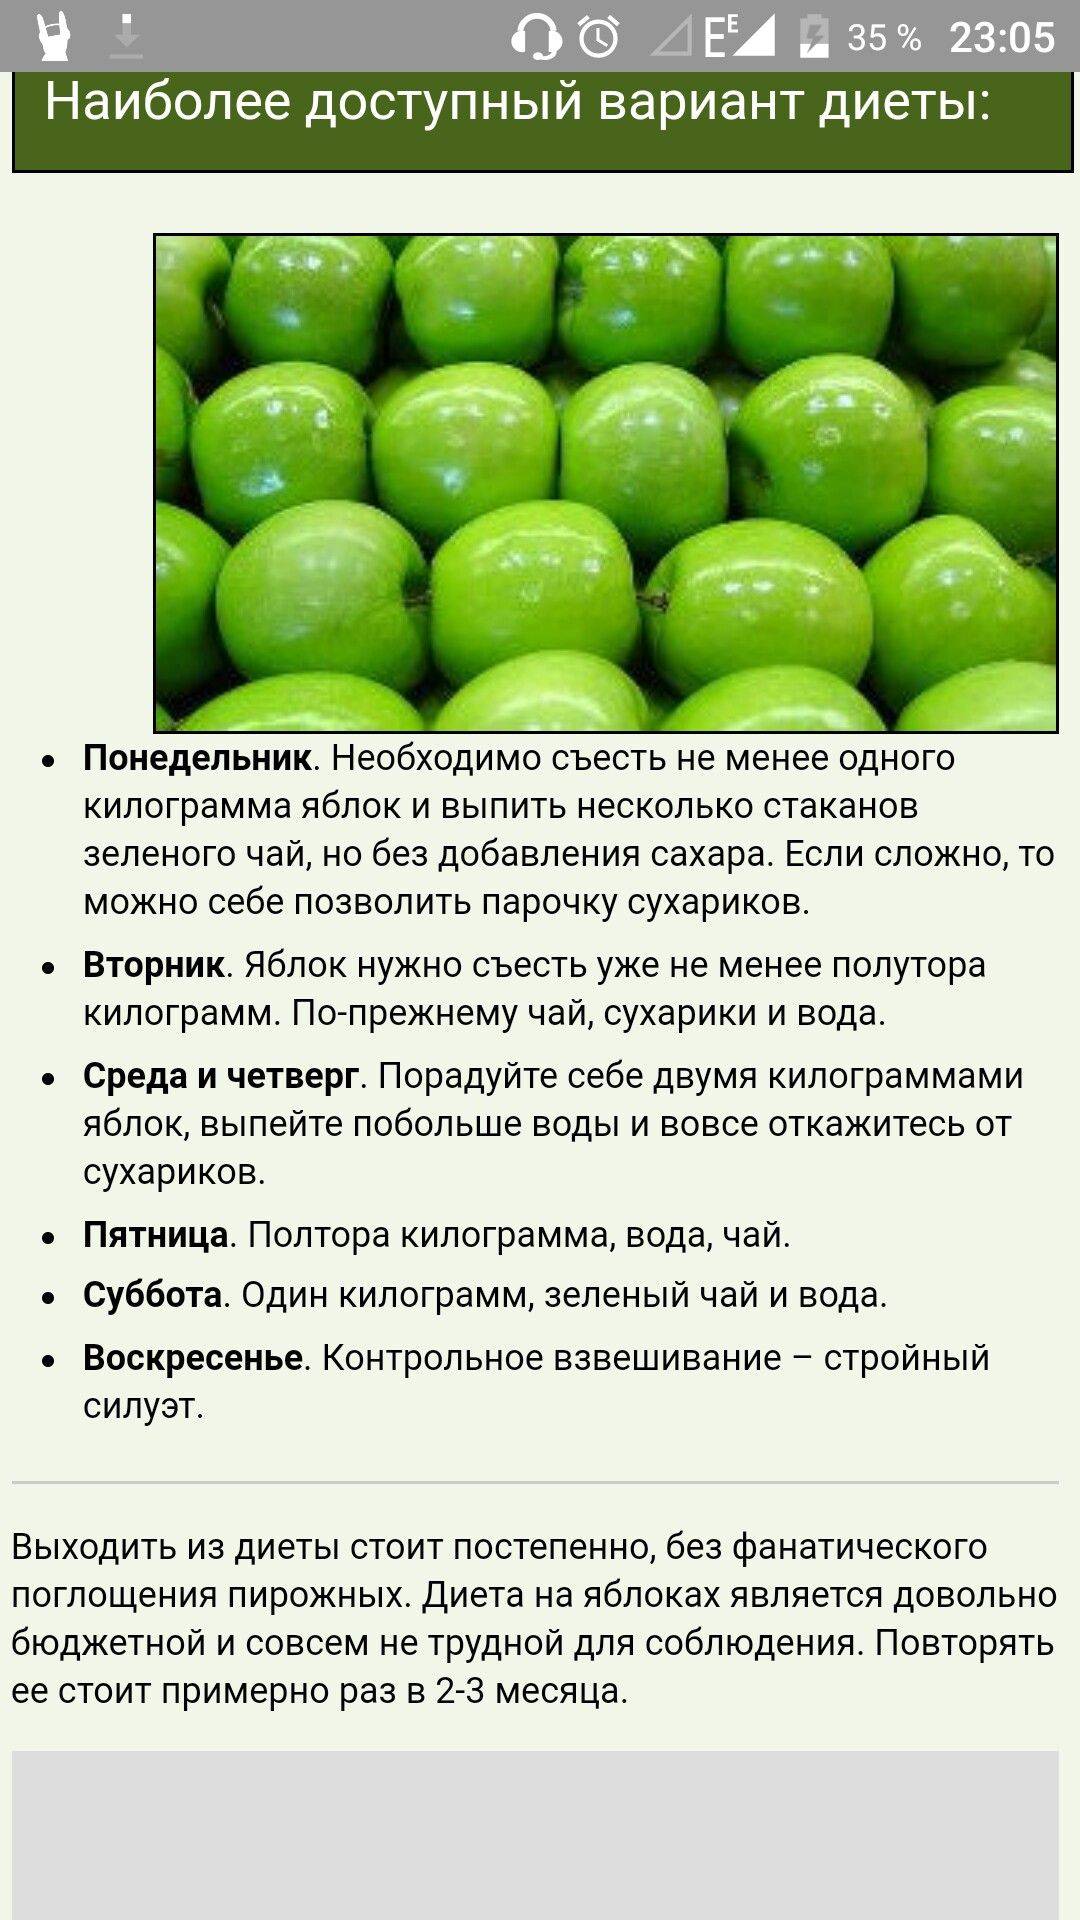 3 способа похудеть на яблоках